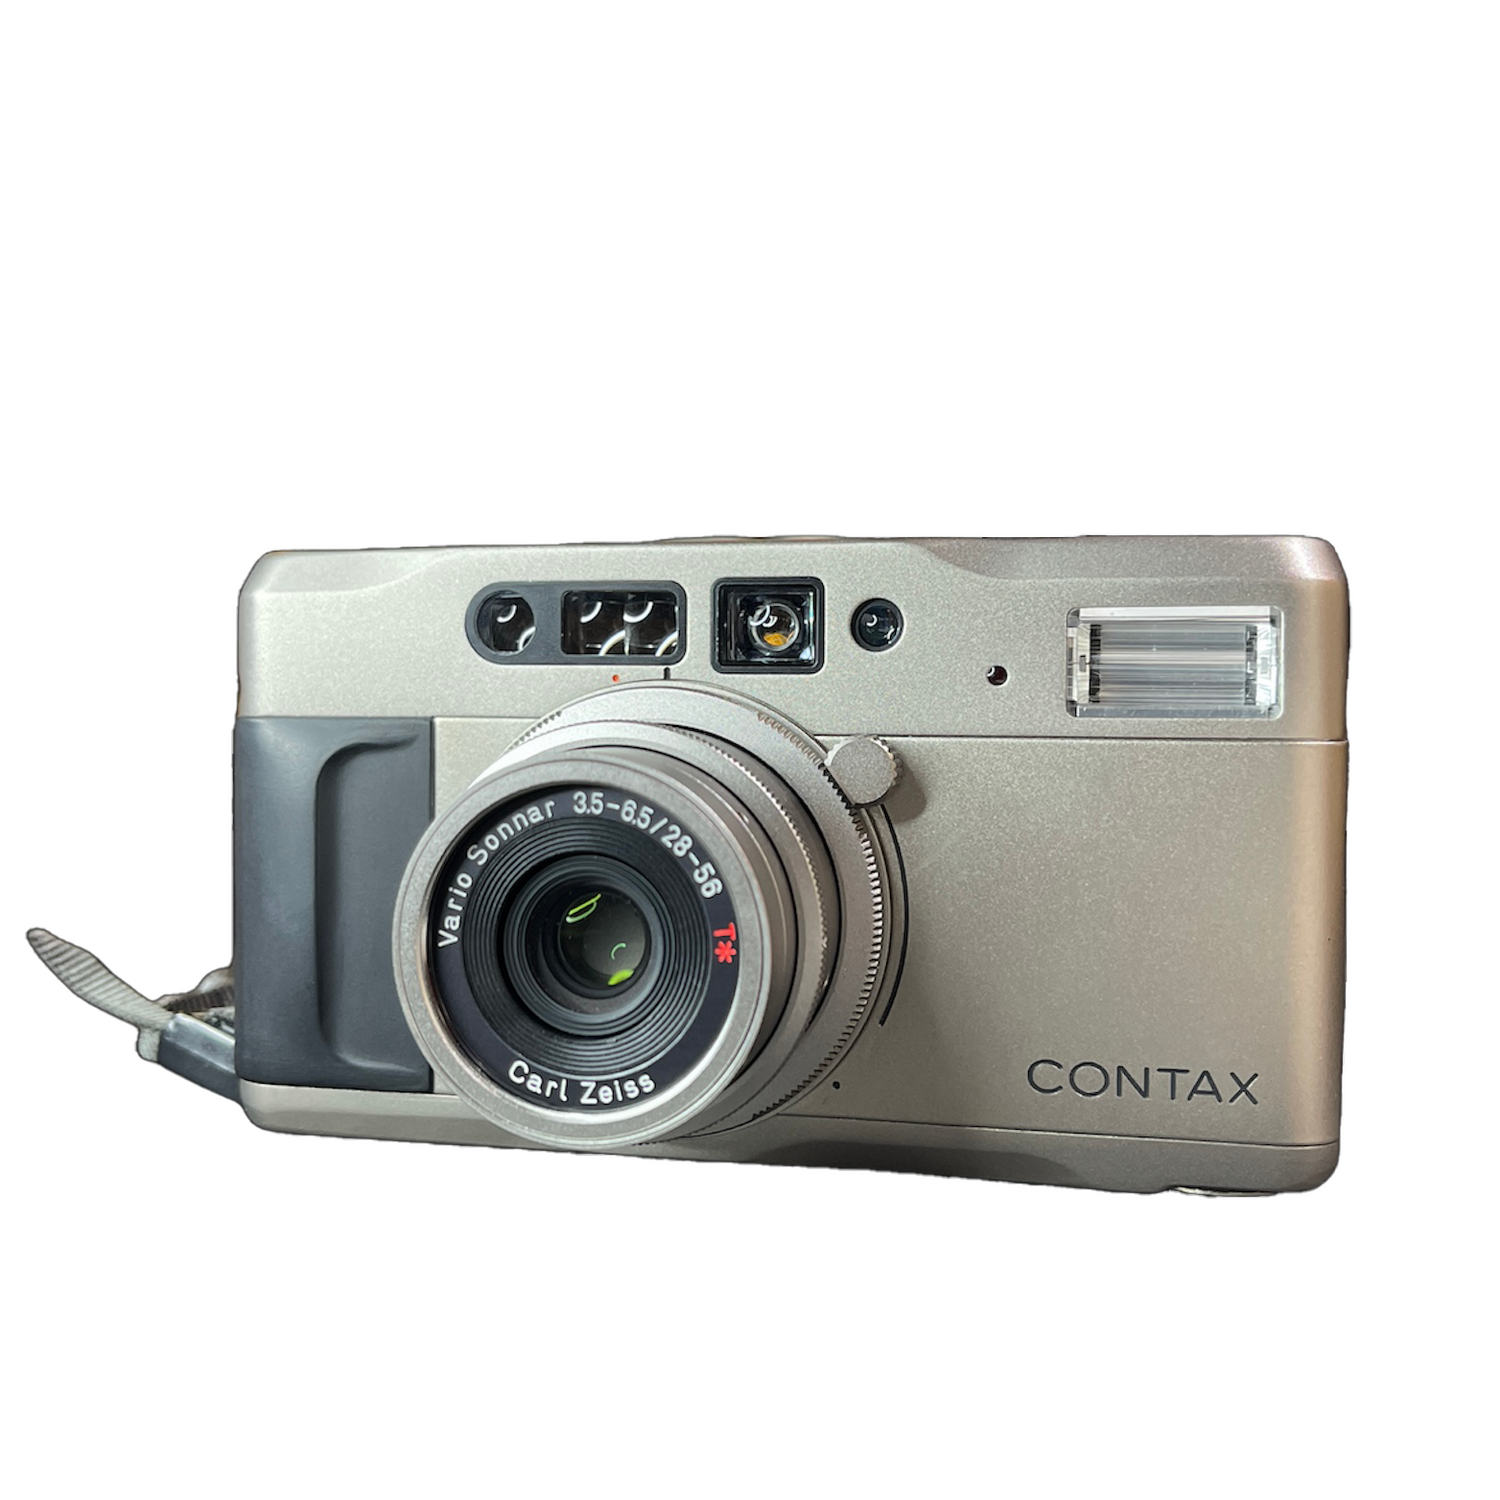 Contax Cameras